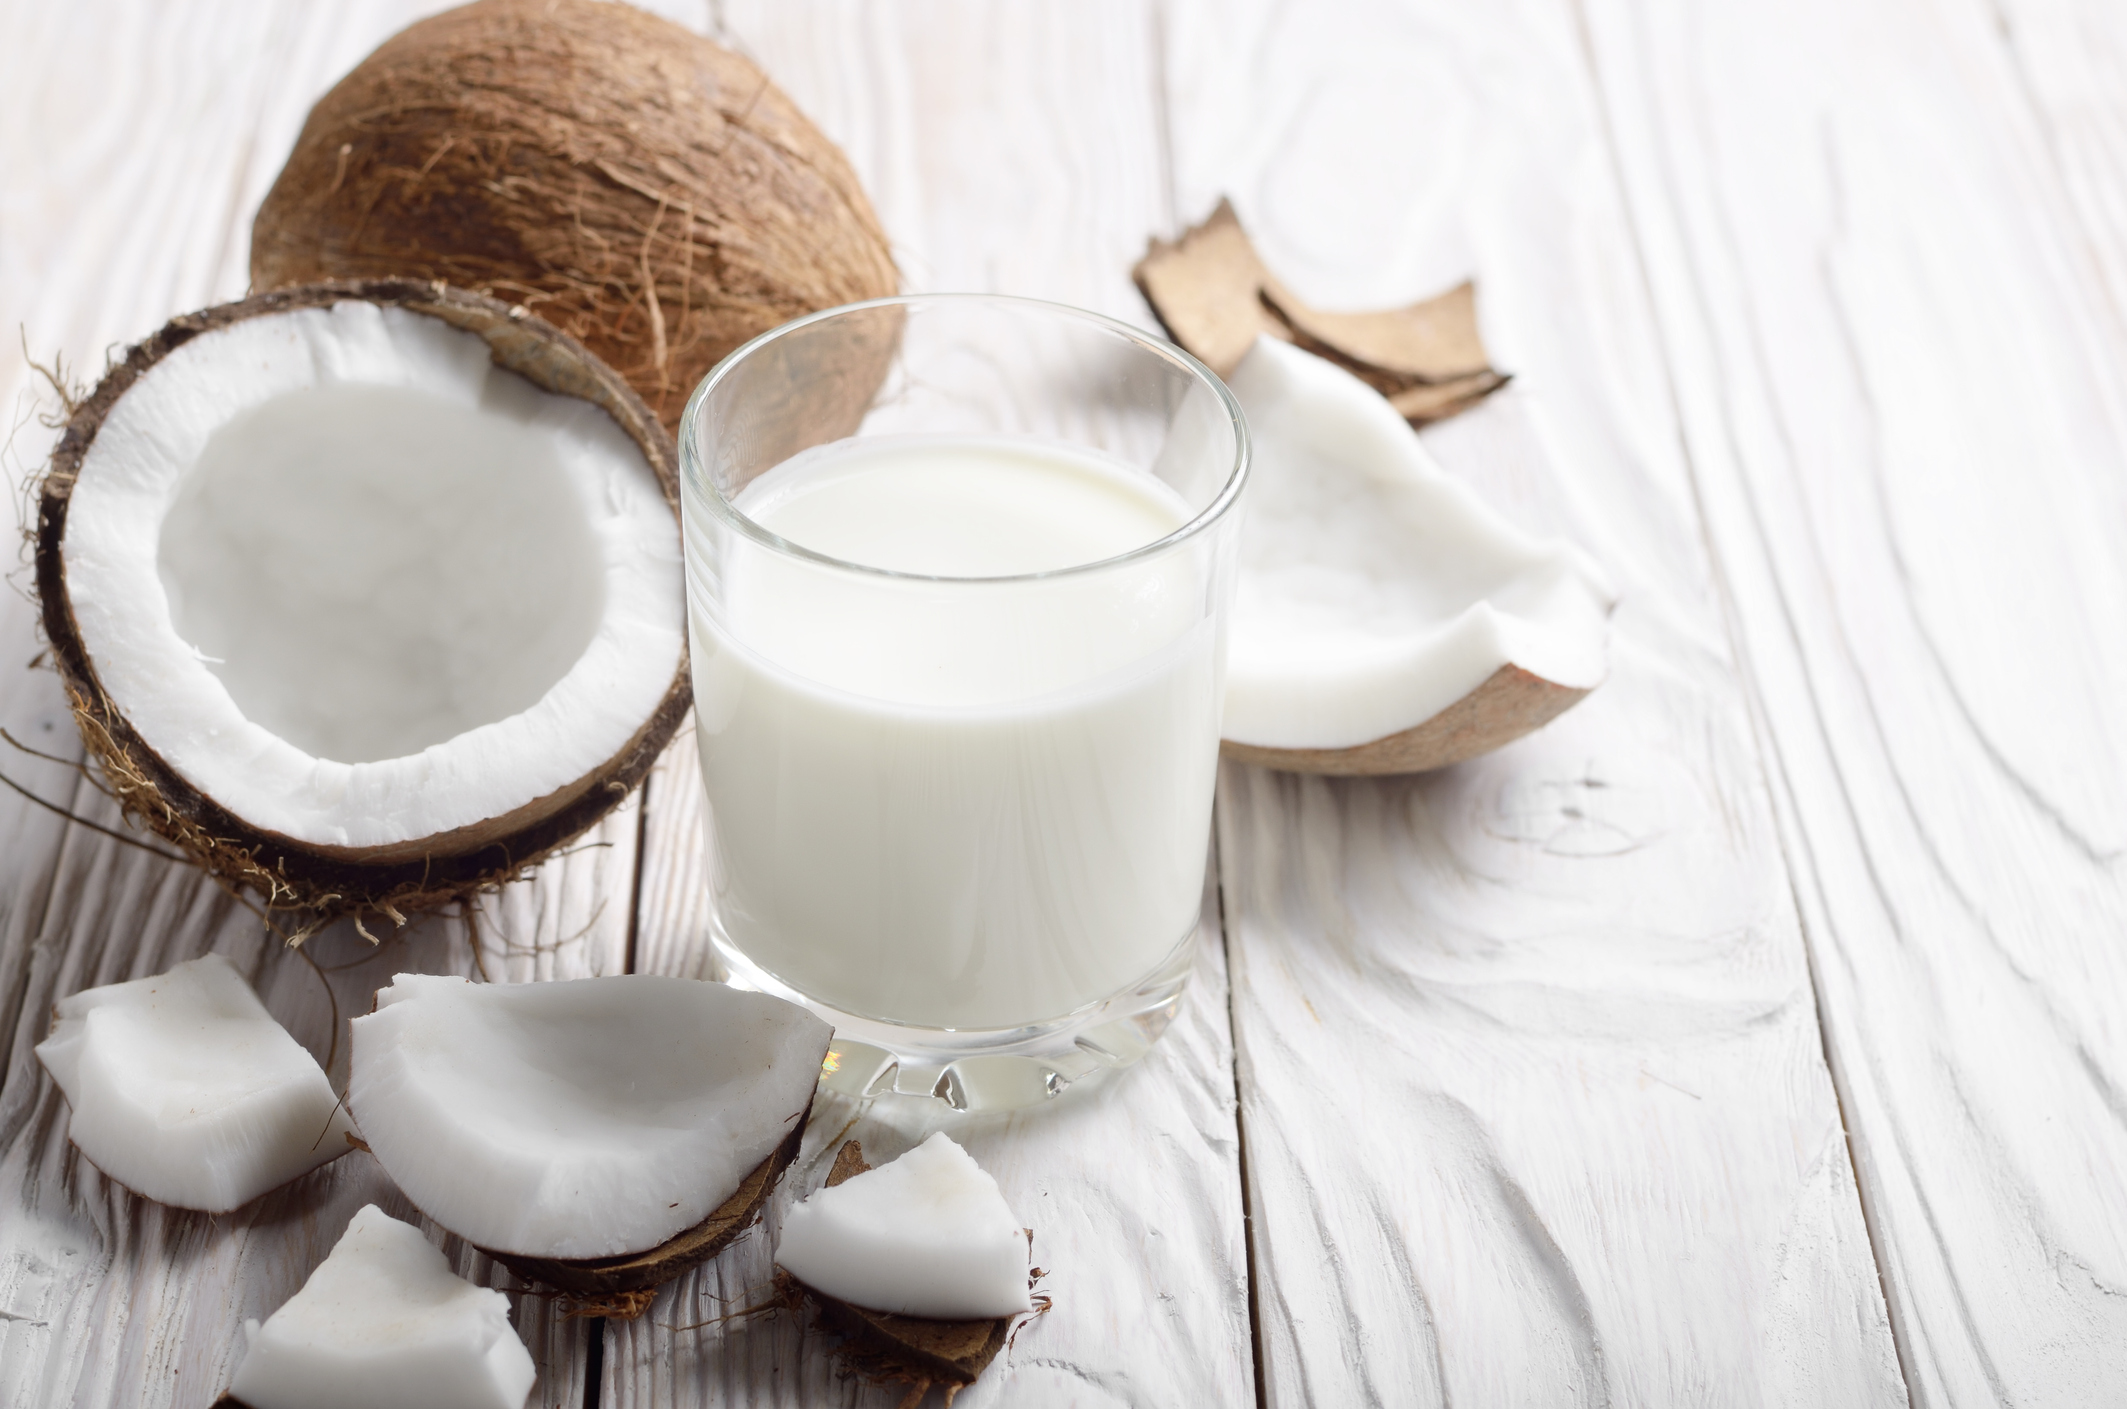 La consistencia de la leche de coco definirá la textura de tu mousse.